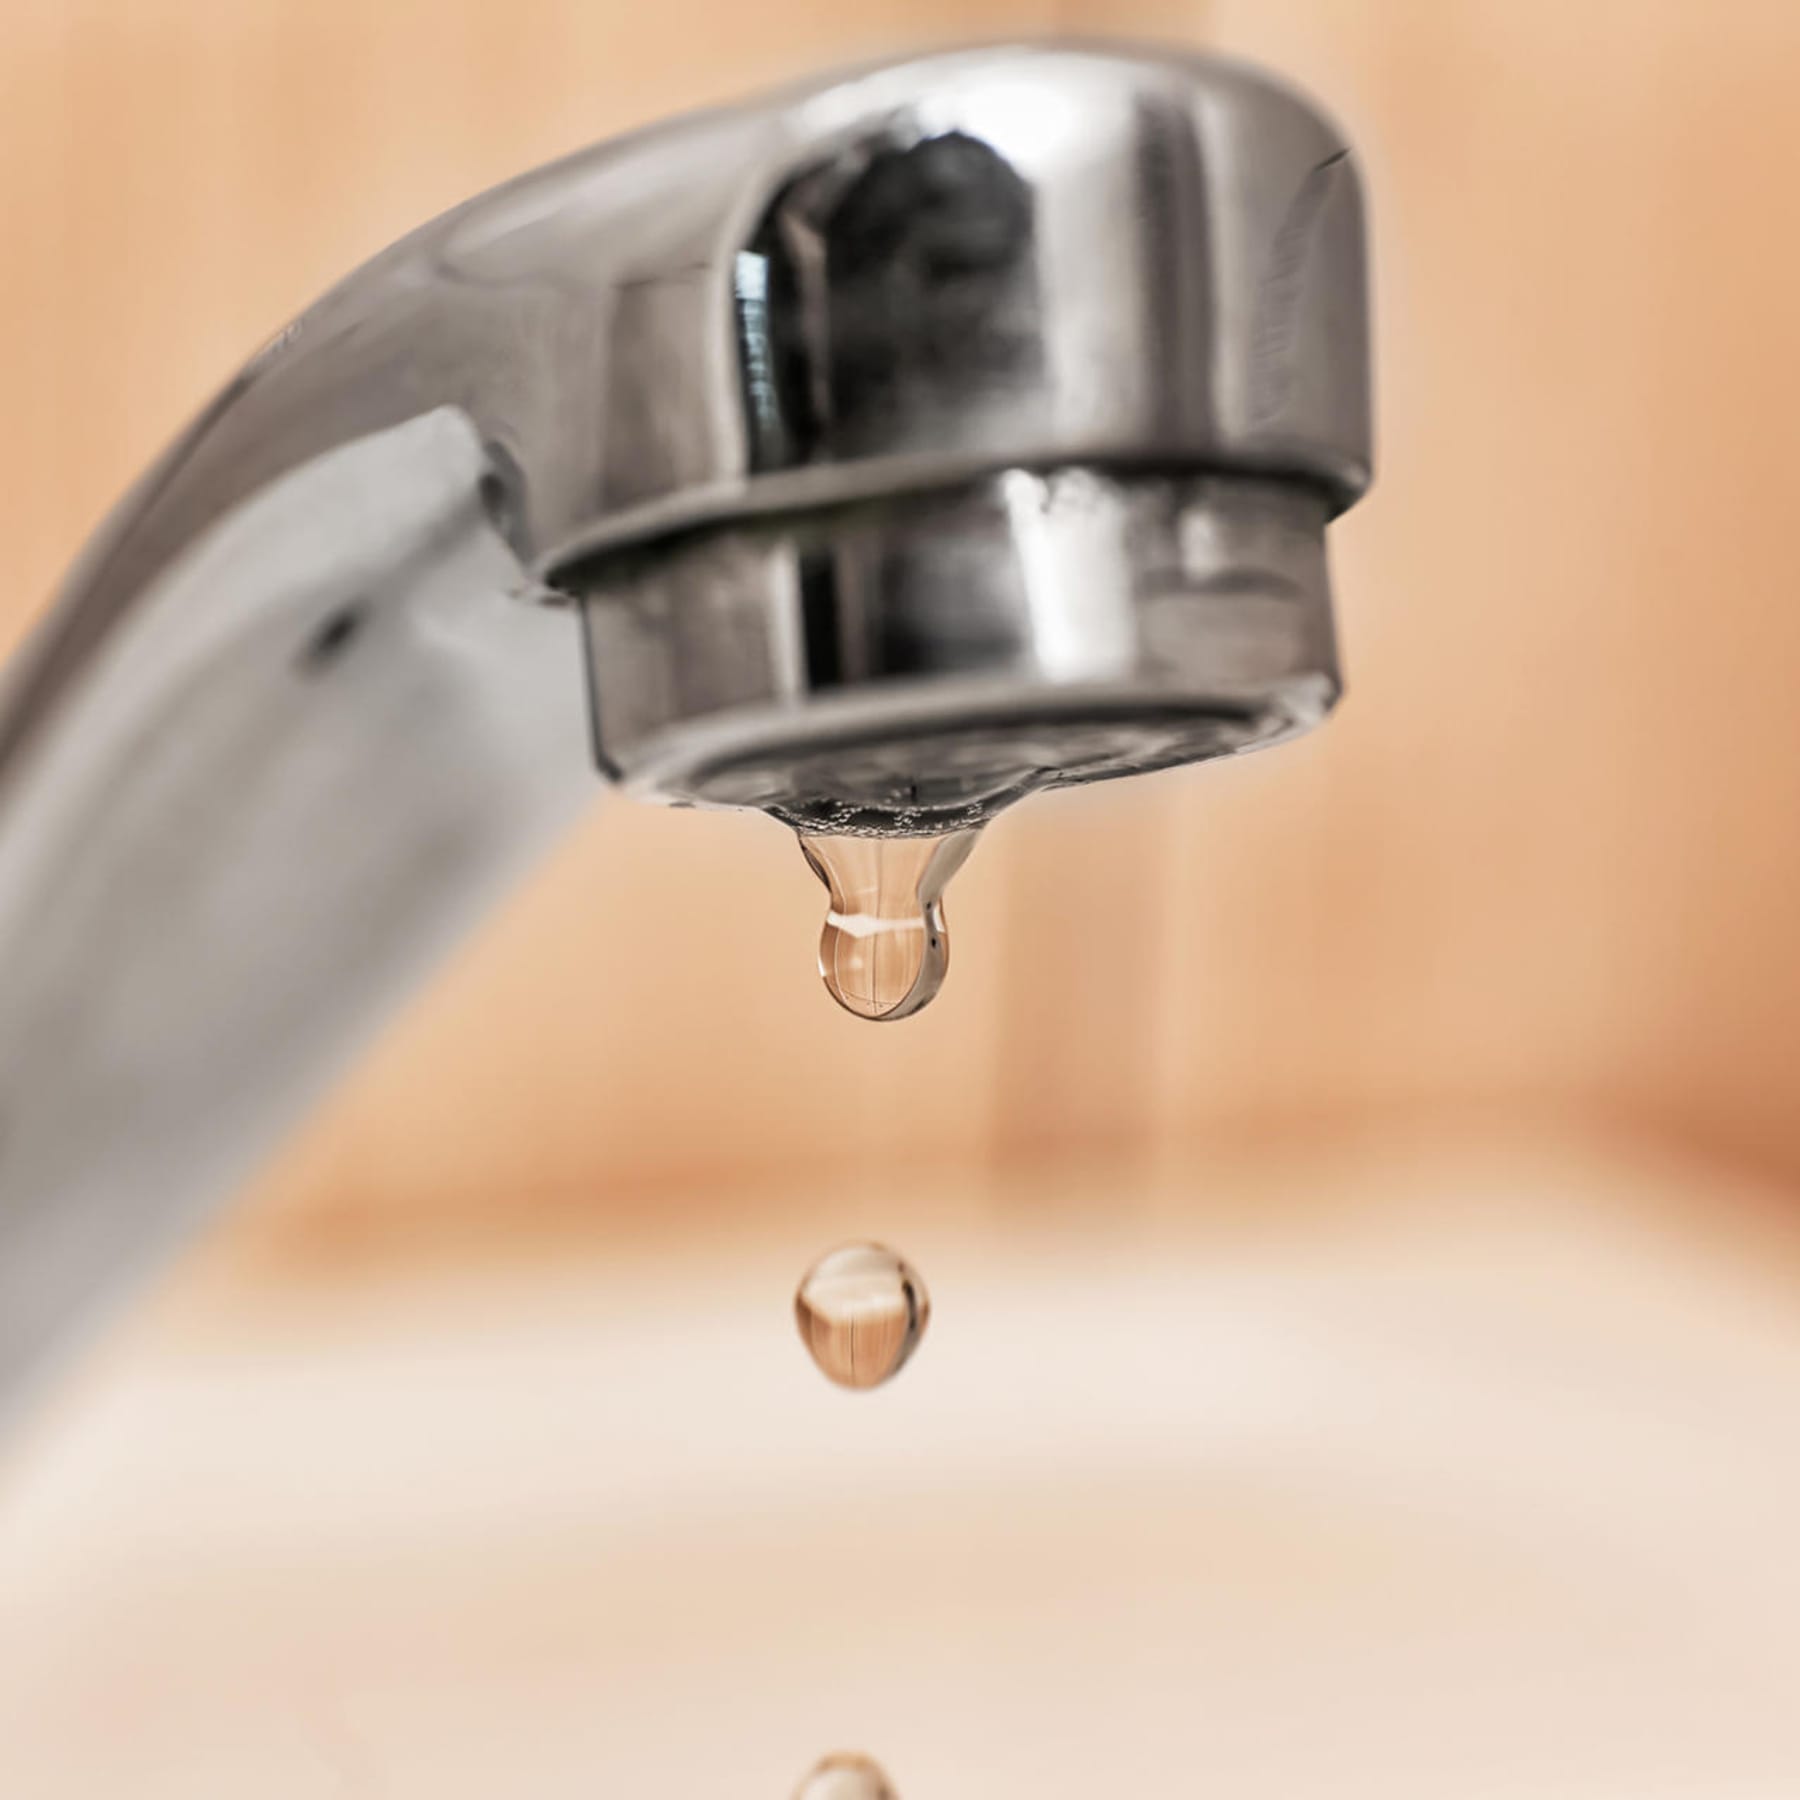 Wasserhahn reparieren: So stoppen Sie das lästige Tropfen in